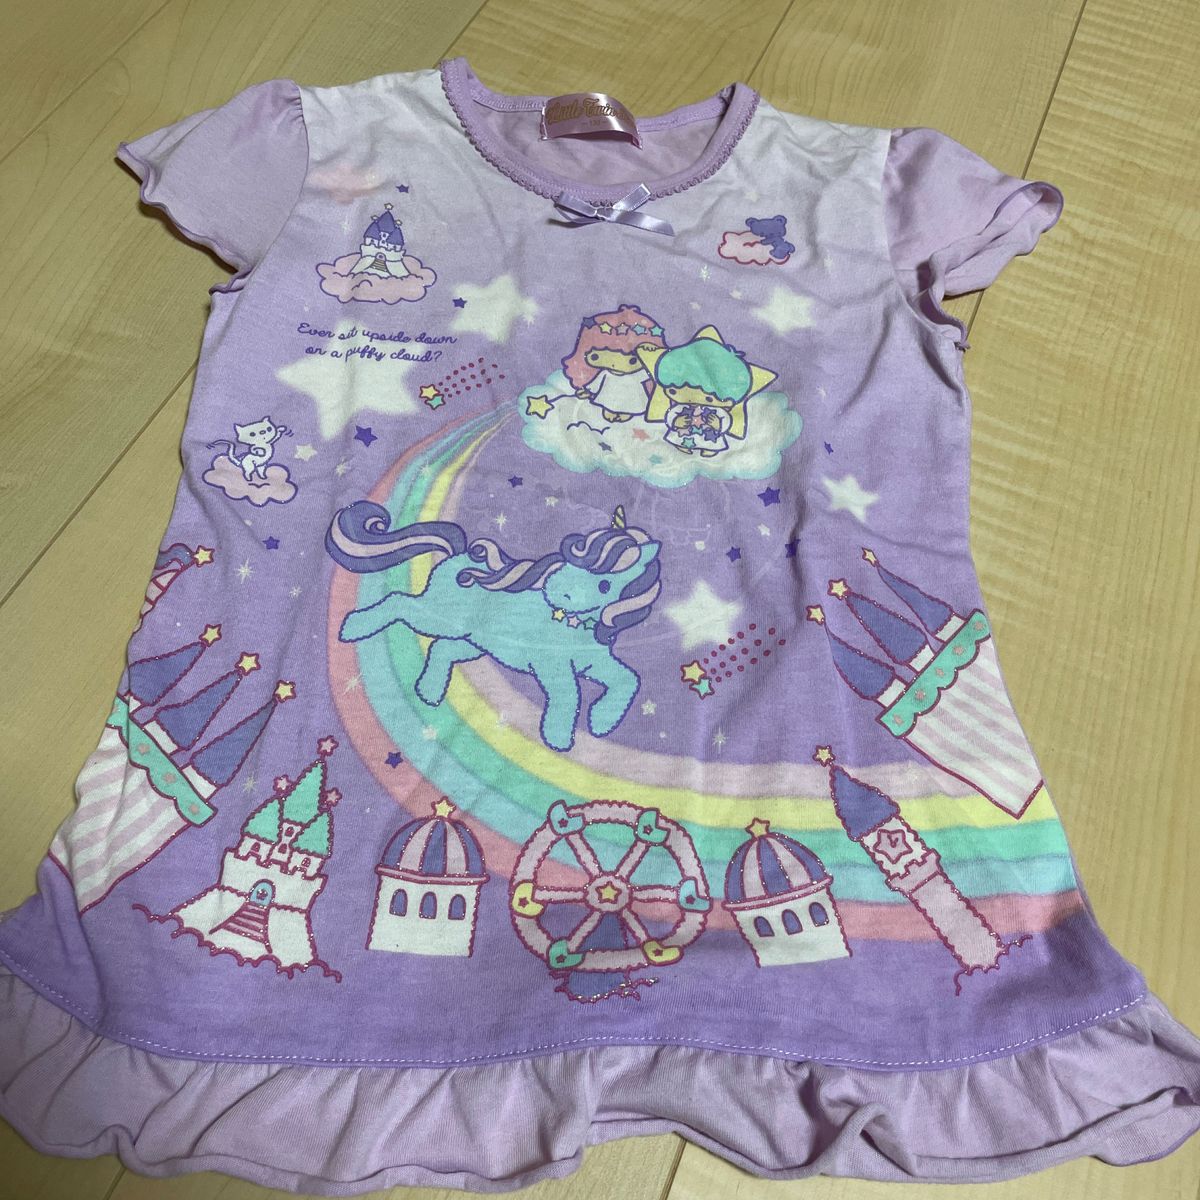 子供服 パジャマ 130 サンリオ Sanrio キキララ リトルツインスターズ 半袖 上下 ルームウェア 美品